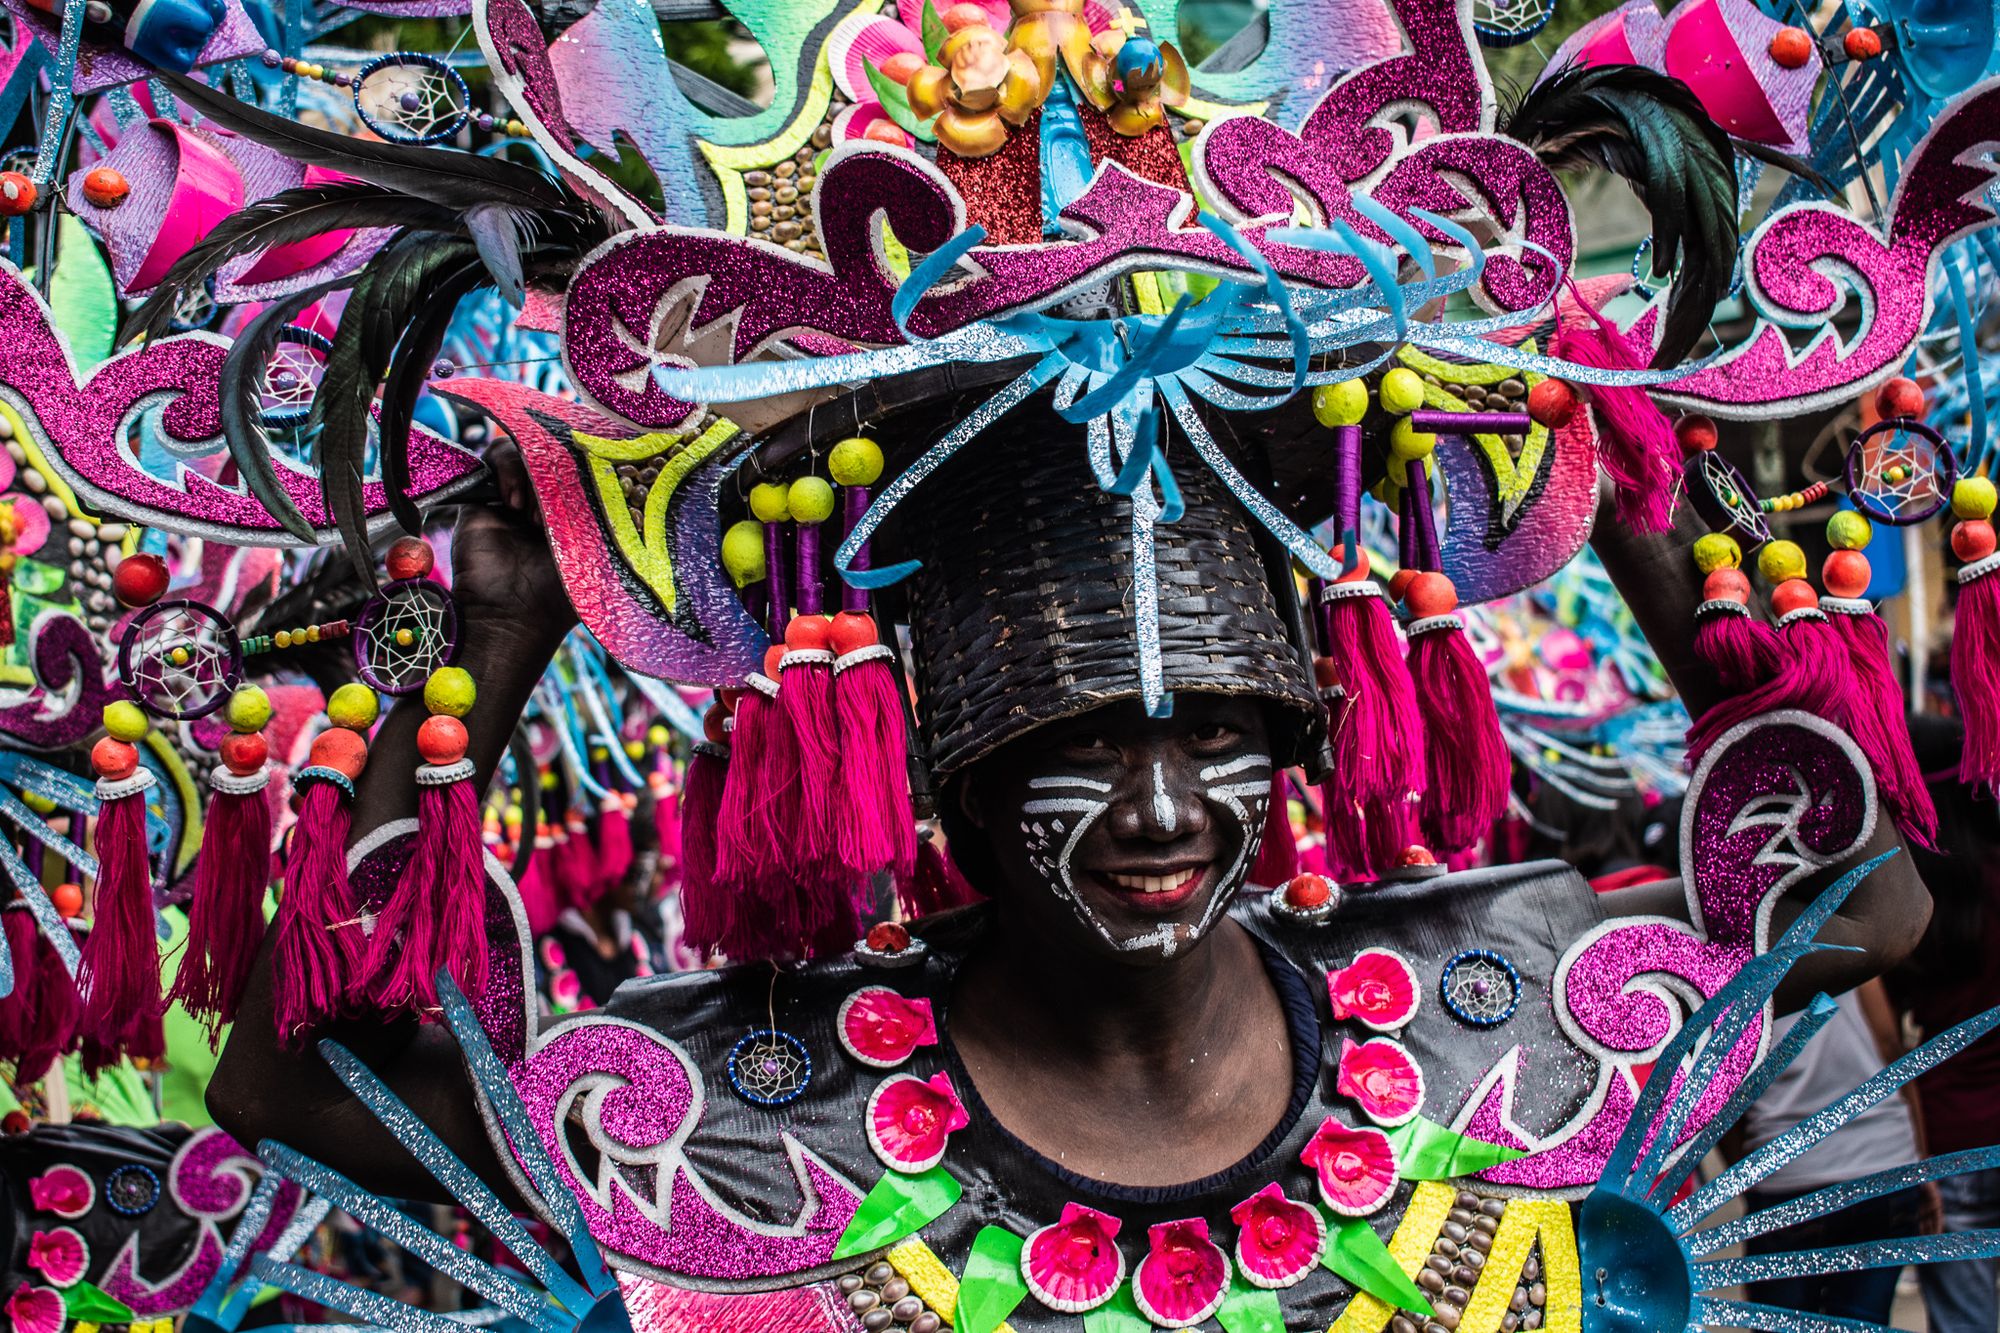 El festival Ati-Atihan de Kalibo es una fiesta religiosa anual que incluye coloridos trajes, bailes, desfiles y mucho más. Es uno de los mayores festivales de Filipinas y dura una semana entera en enero, aunque los preparativos suelen ser mucho más largos.